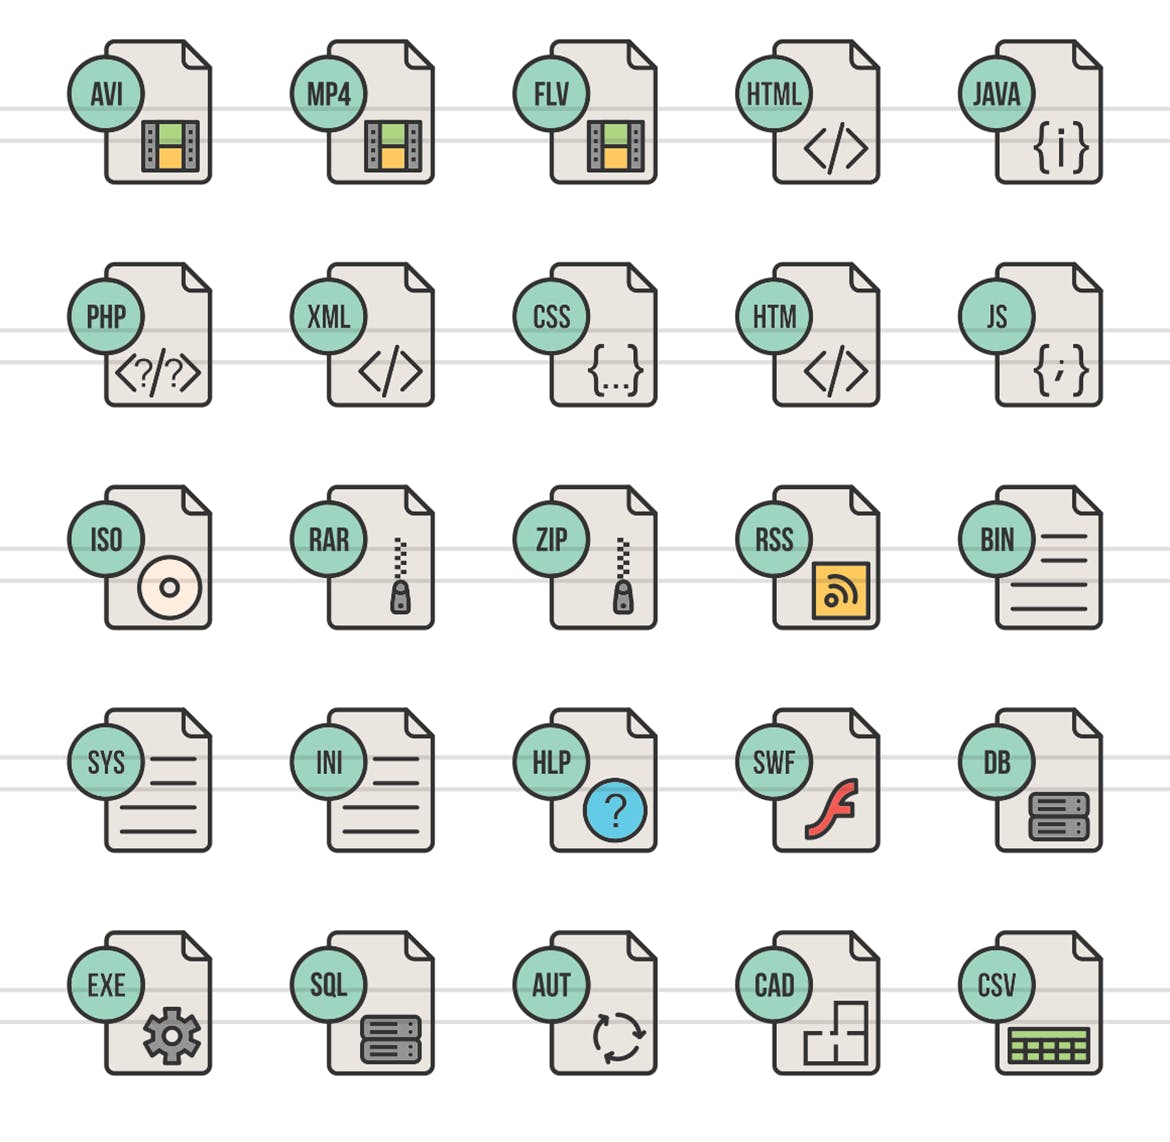 50枚文件格式填充线性素材库精选图标 II 50 File Formats Filled Line Icons Season II插图(2)